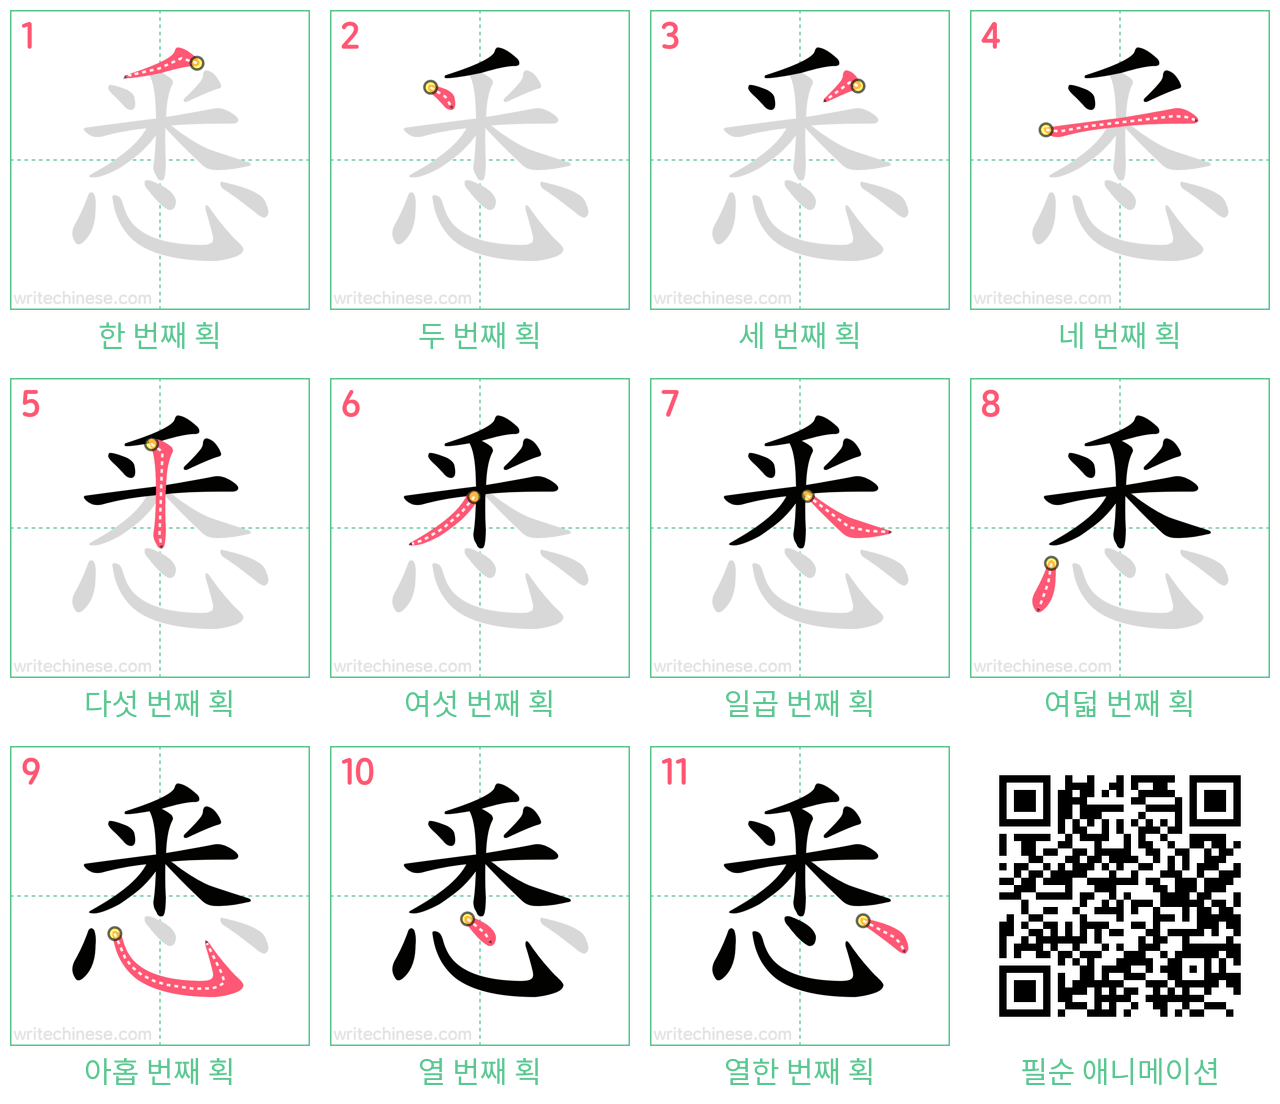 悉 step-by-step stroke order diagrams